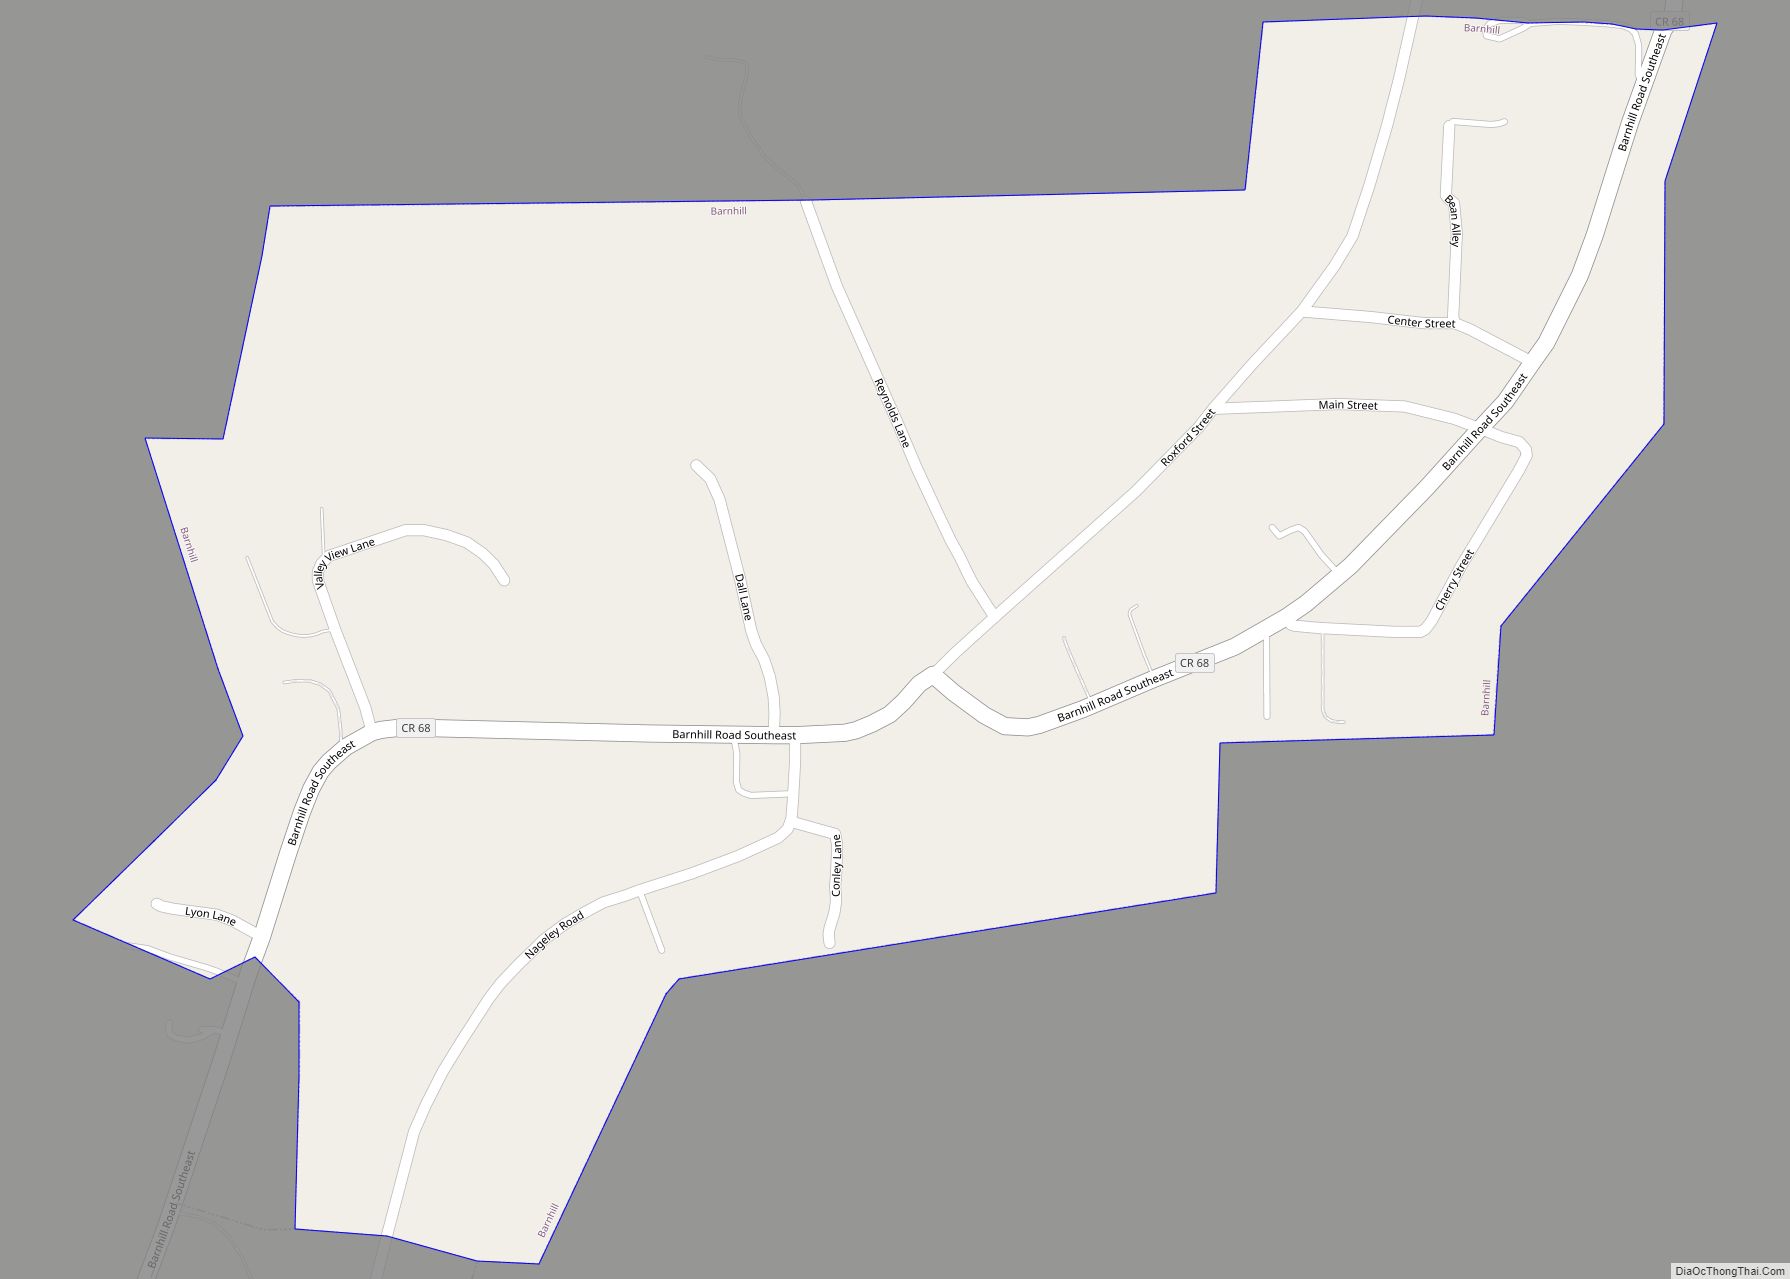 Map of Barnhill village